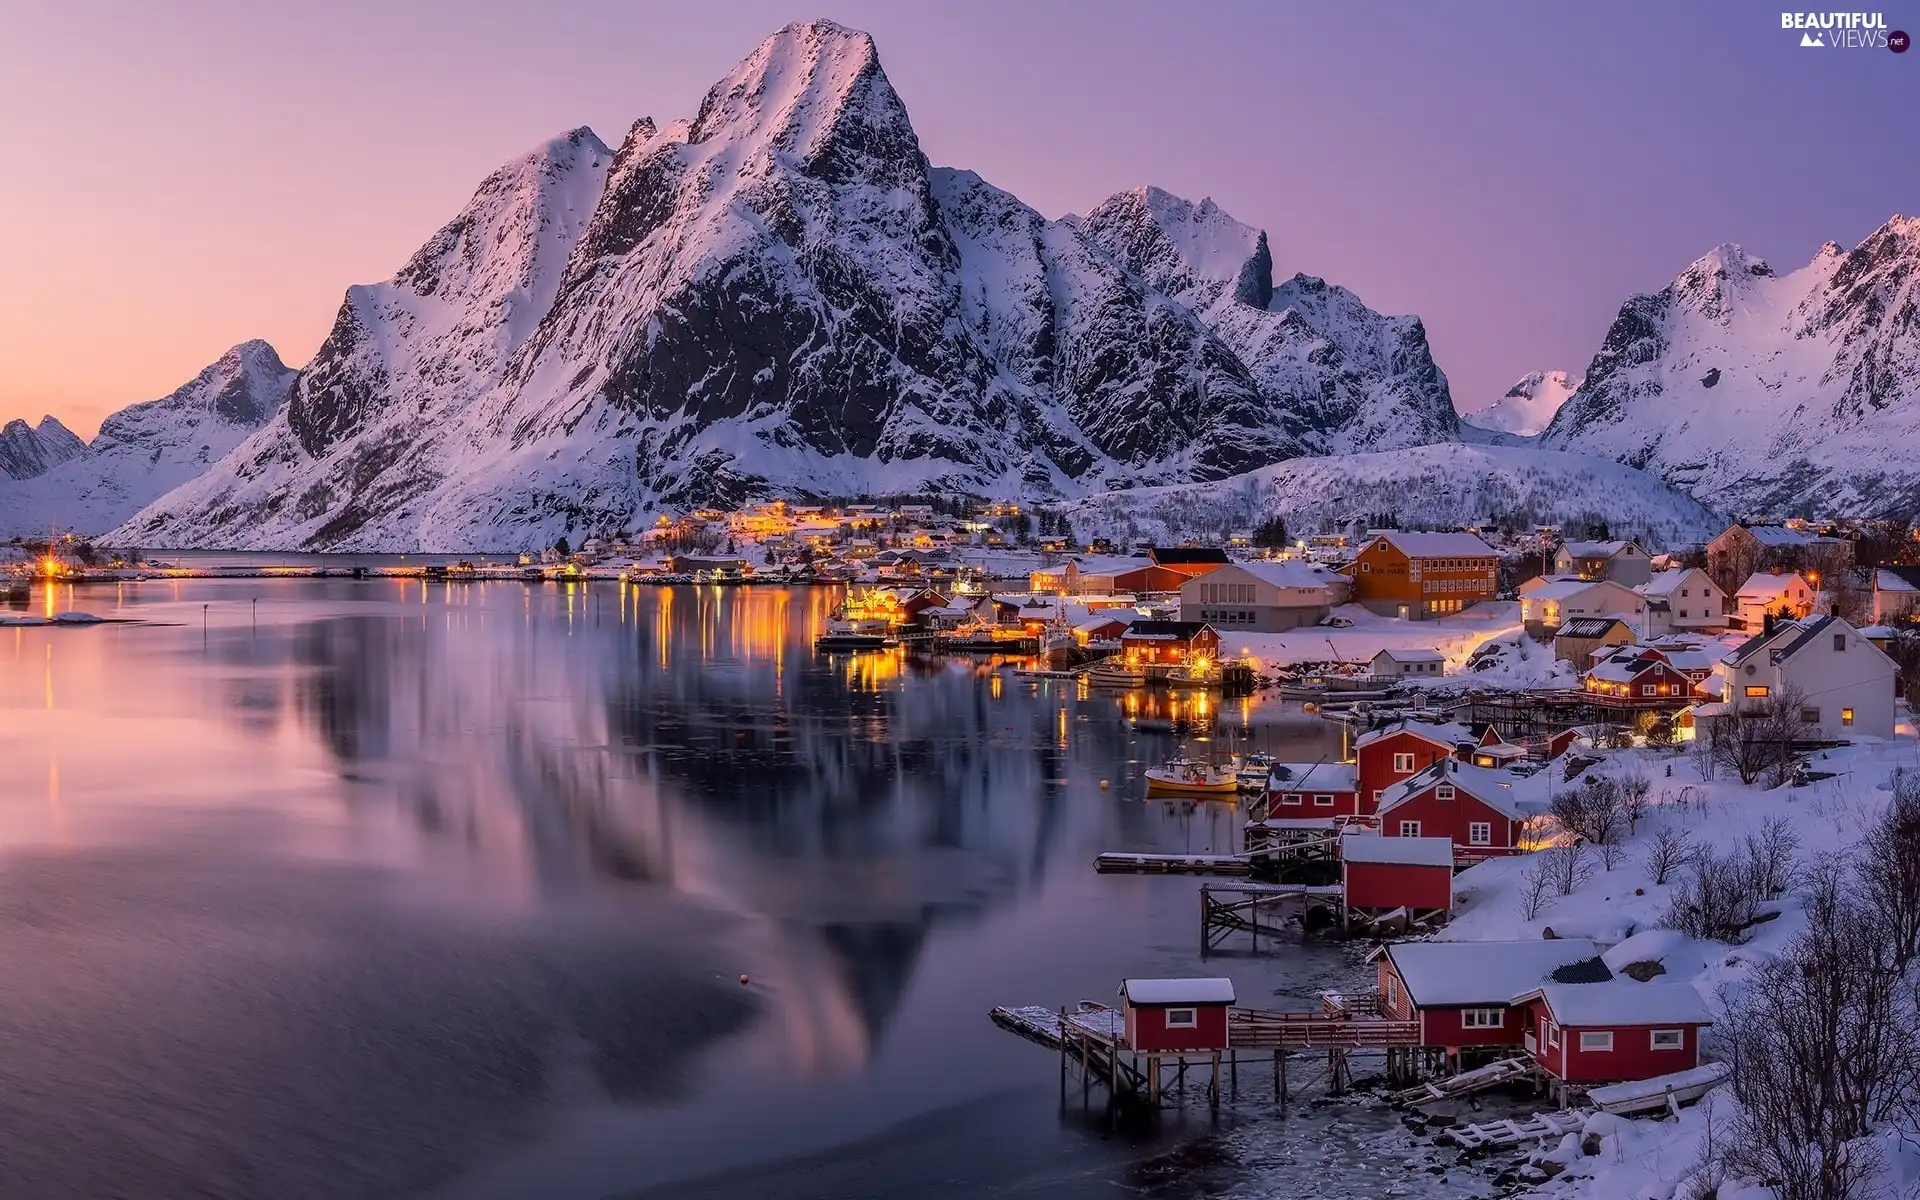 Moskenesoya Island, Reine Village, winter, Houses, Mountains, Lofoten, Norway, light